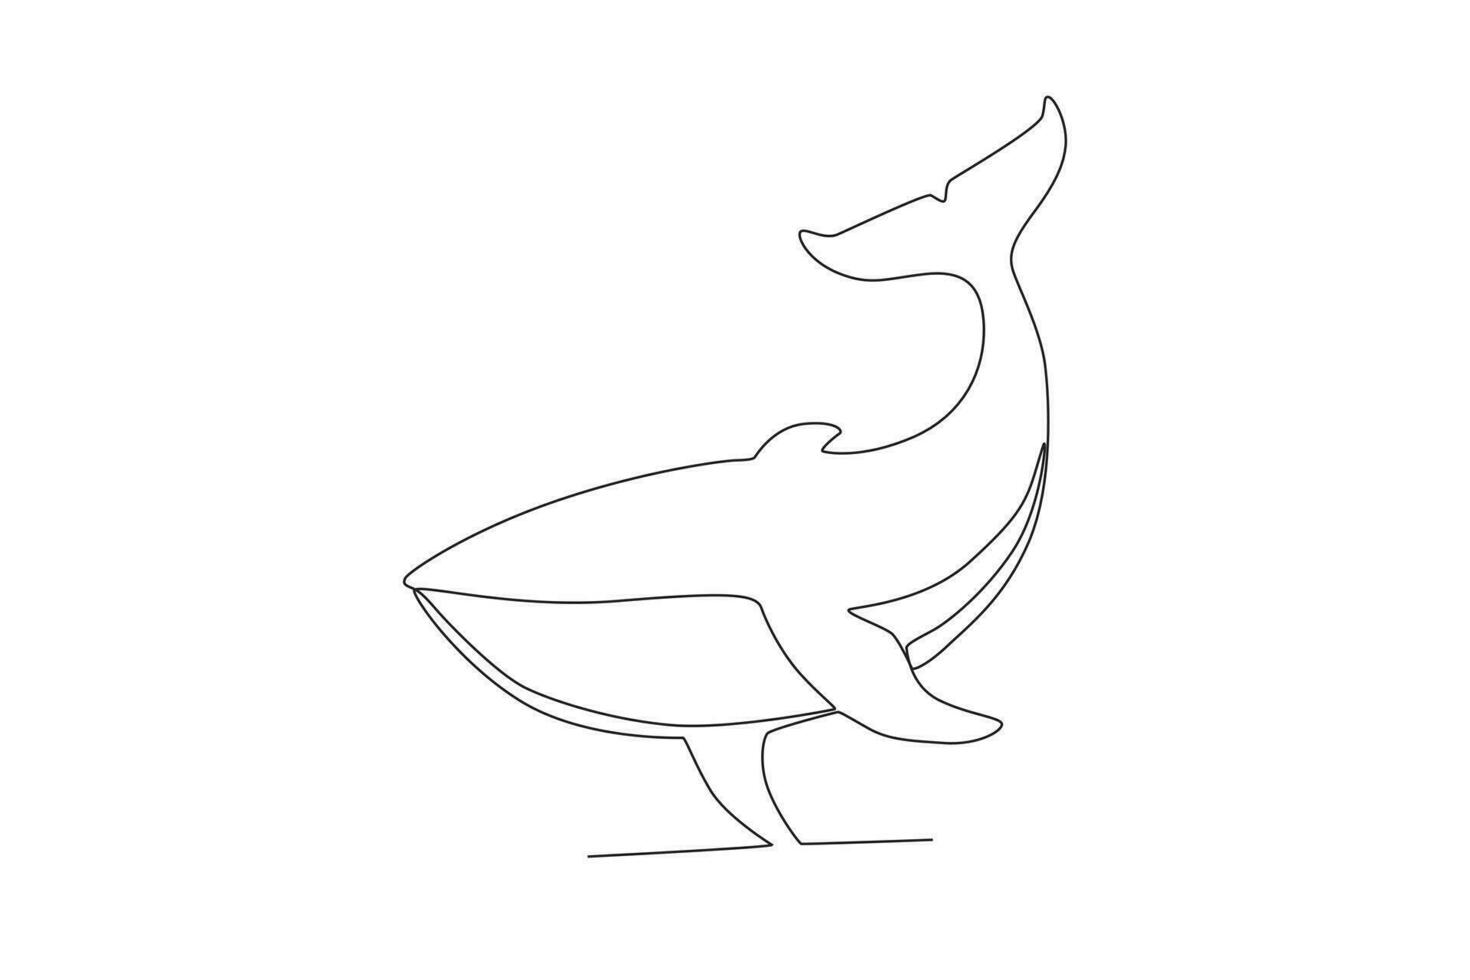 solteiro 1 linha desenhando do uma baleia. contínuo linha desenhar Projeto gráfico vetor ilustração.